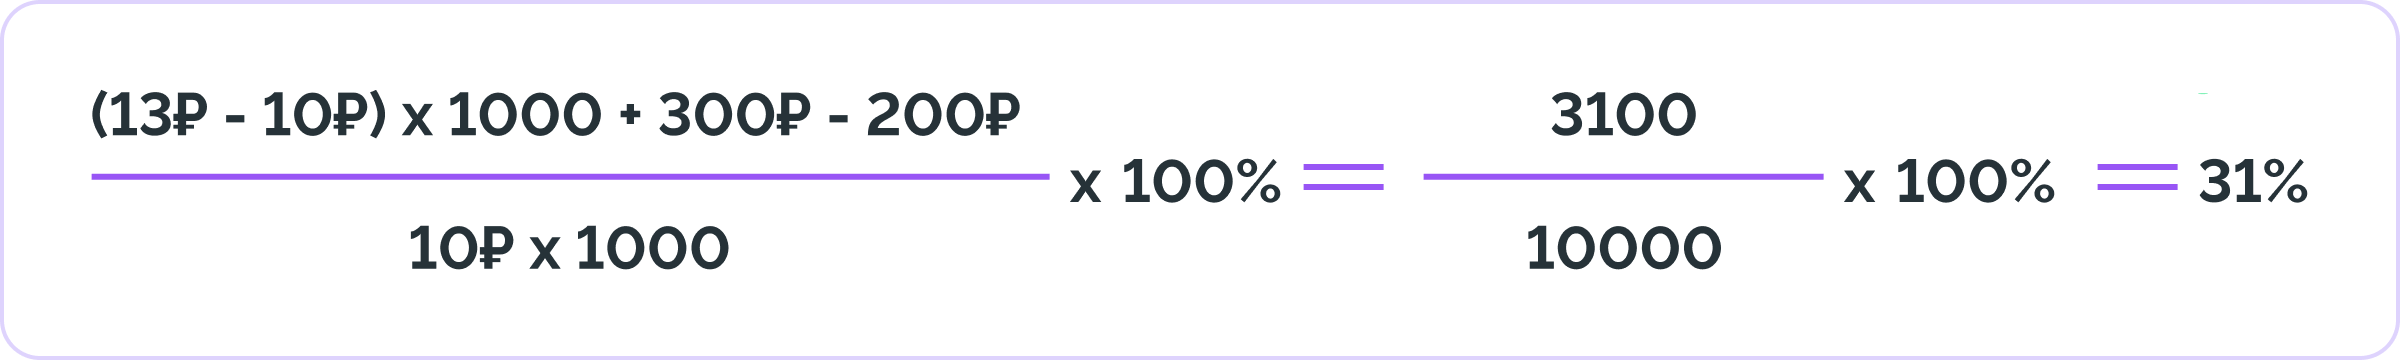 Пример расчета ROI по формуле